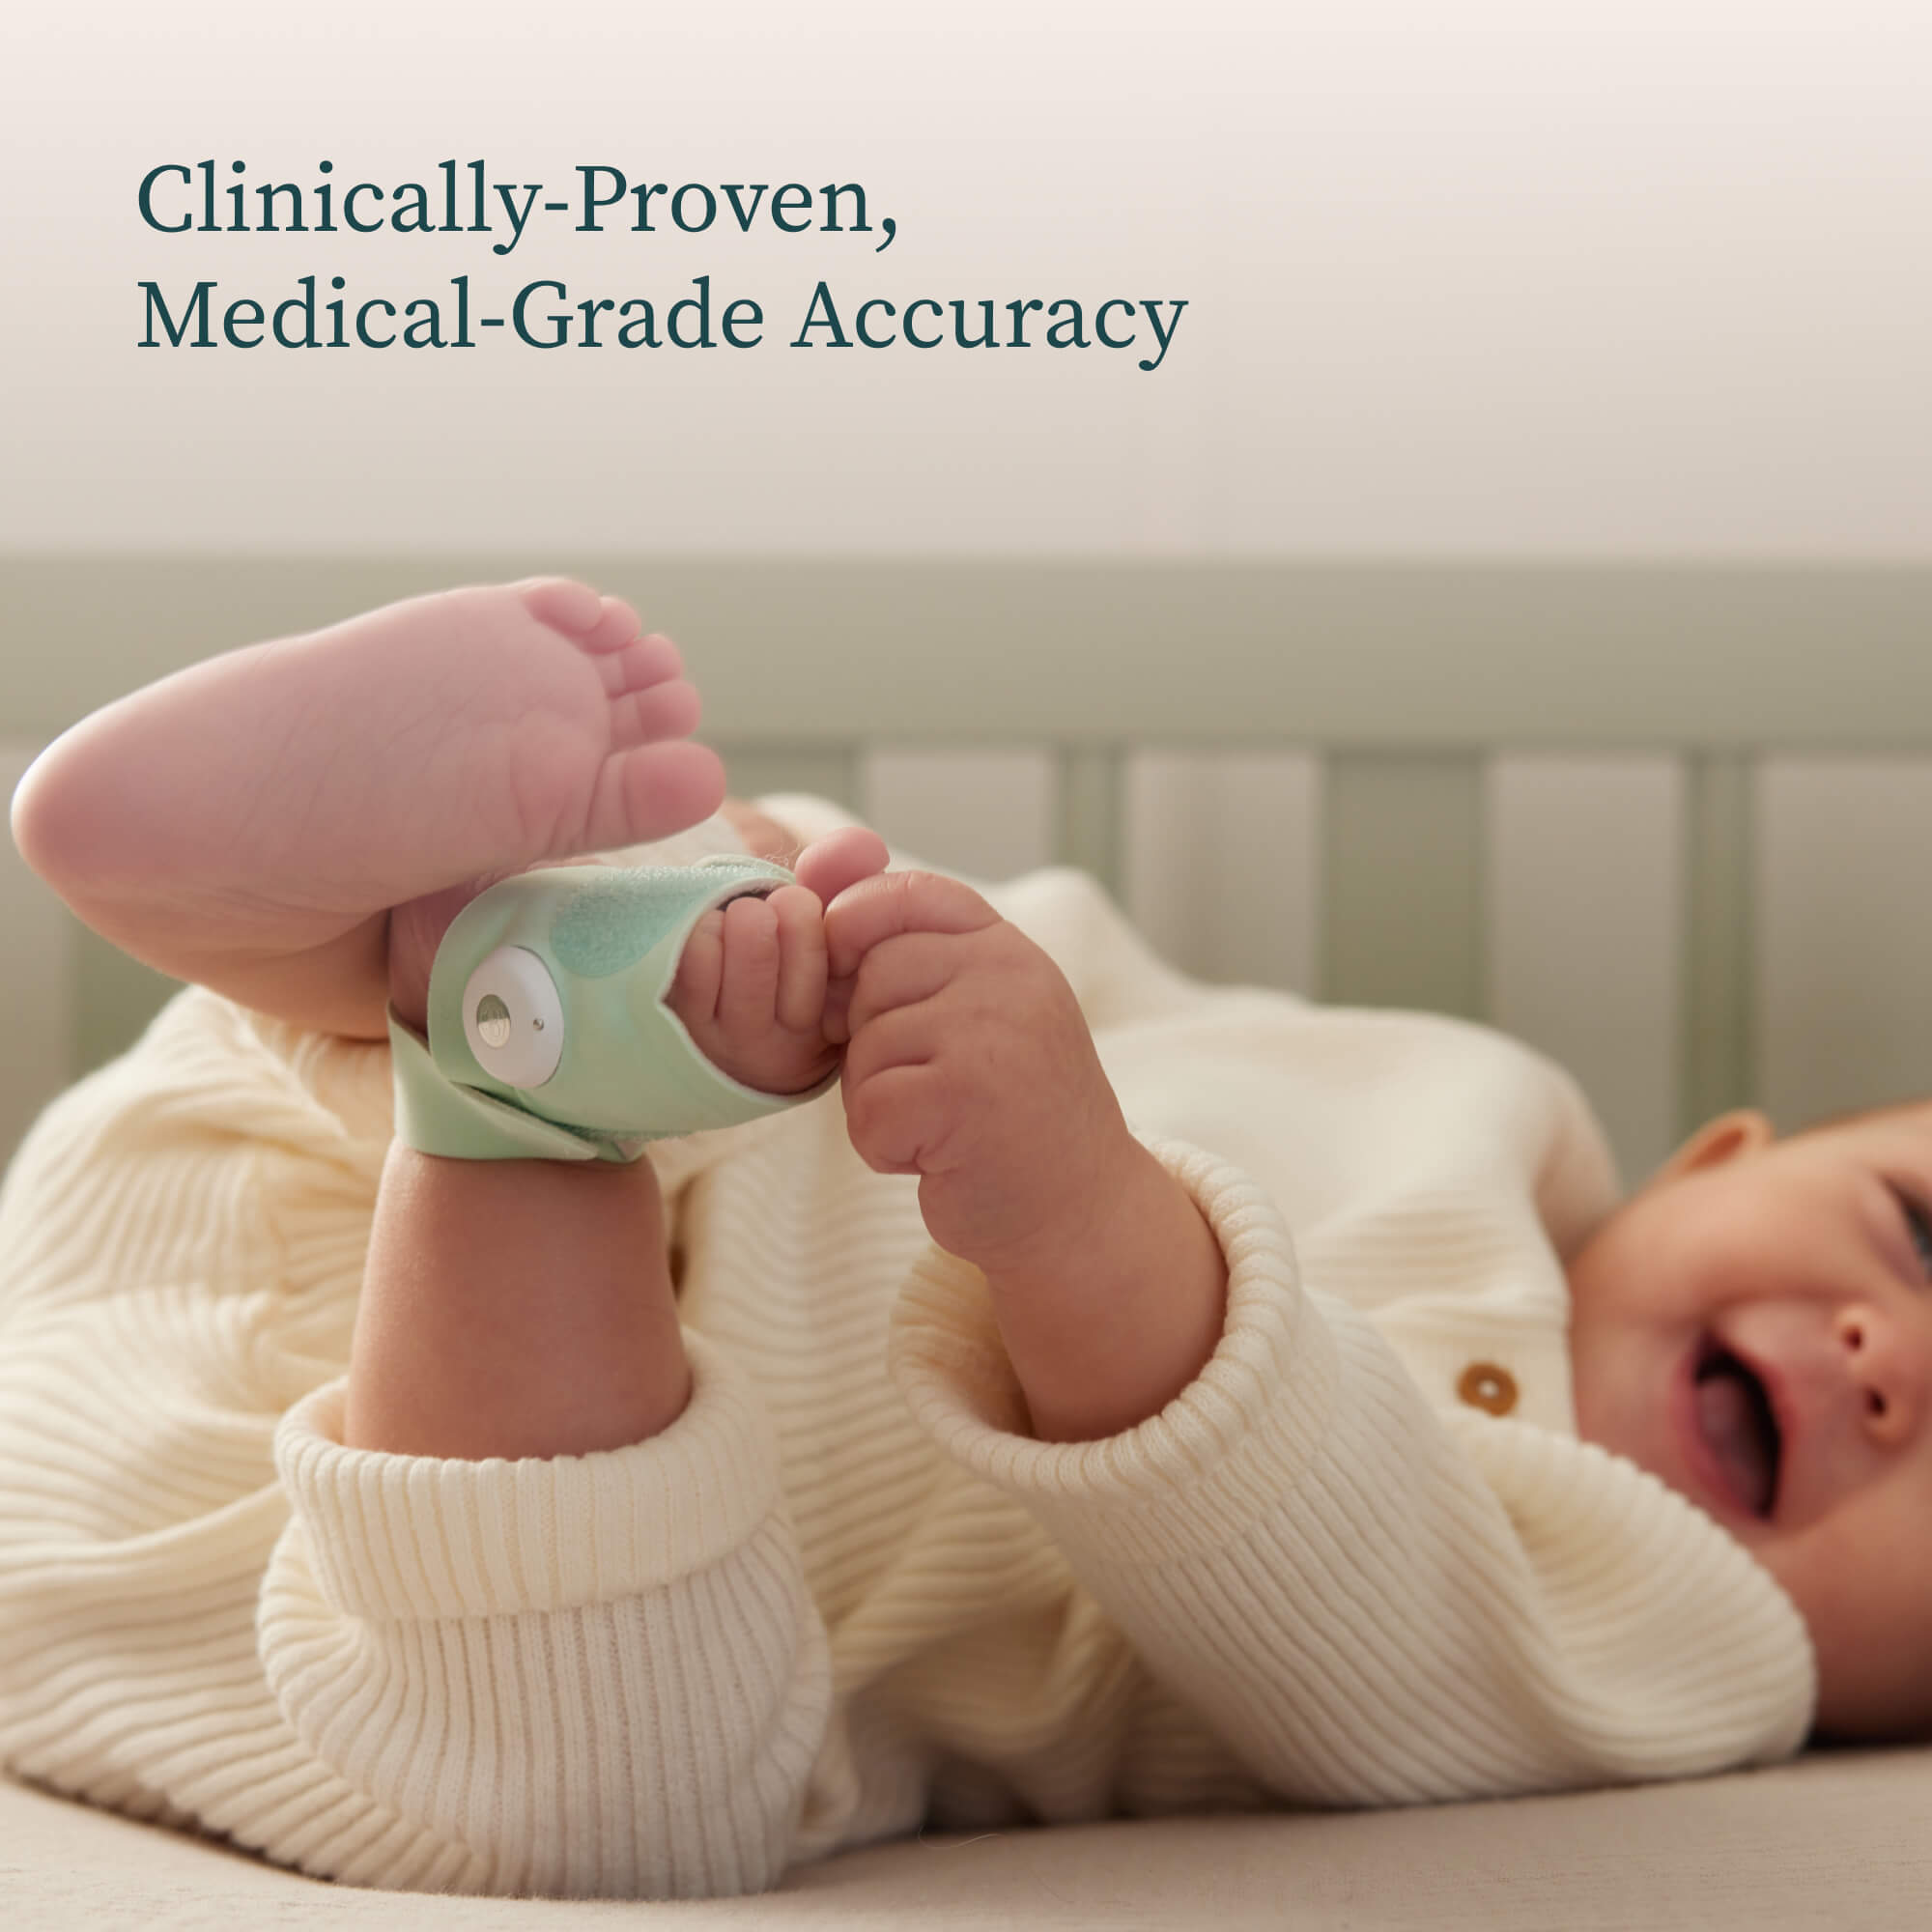 Clinically-proven medical-grade accuracy